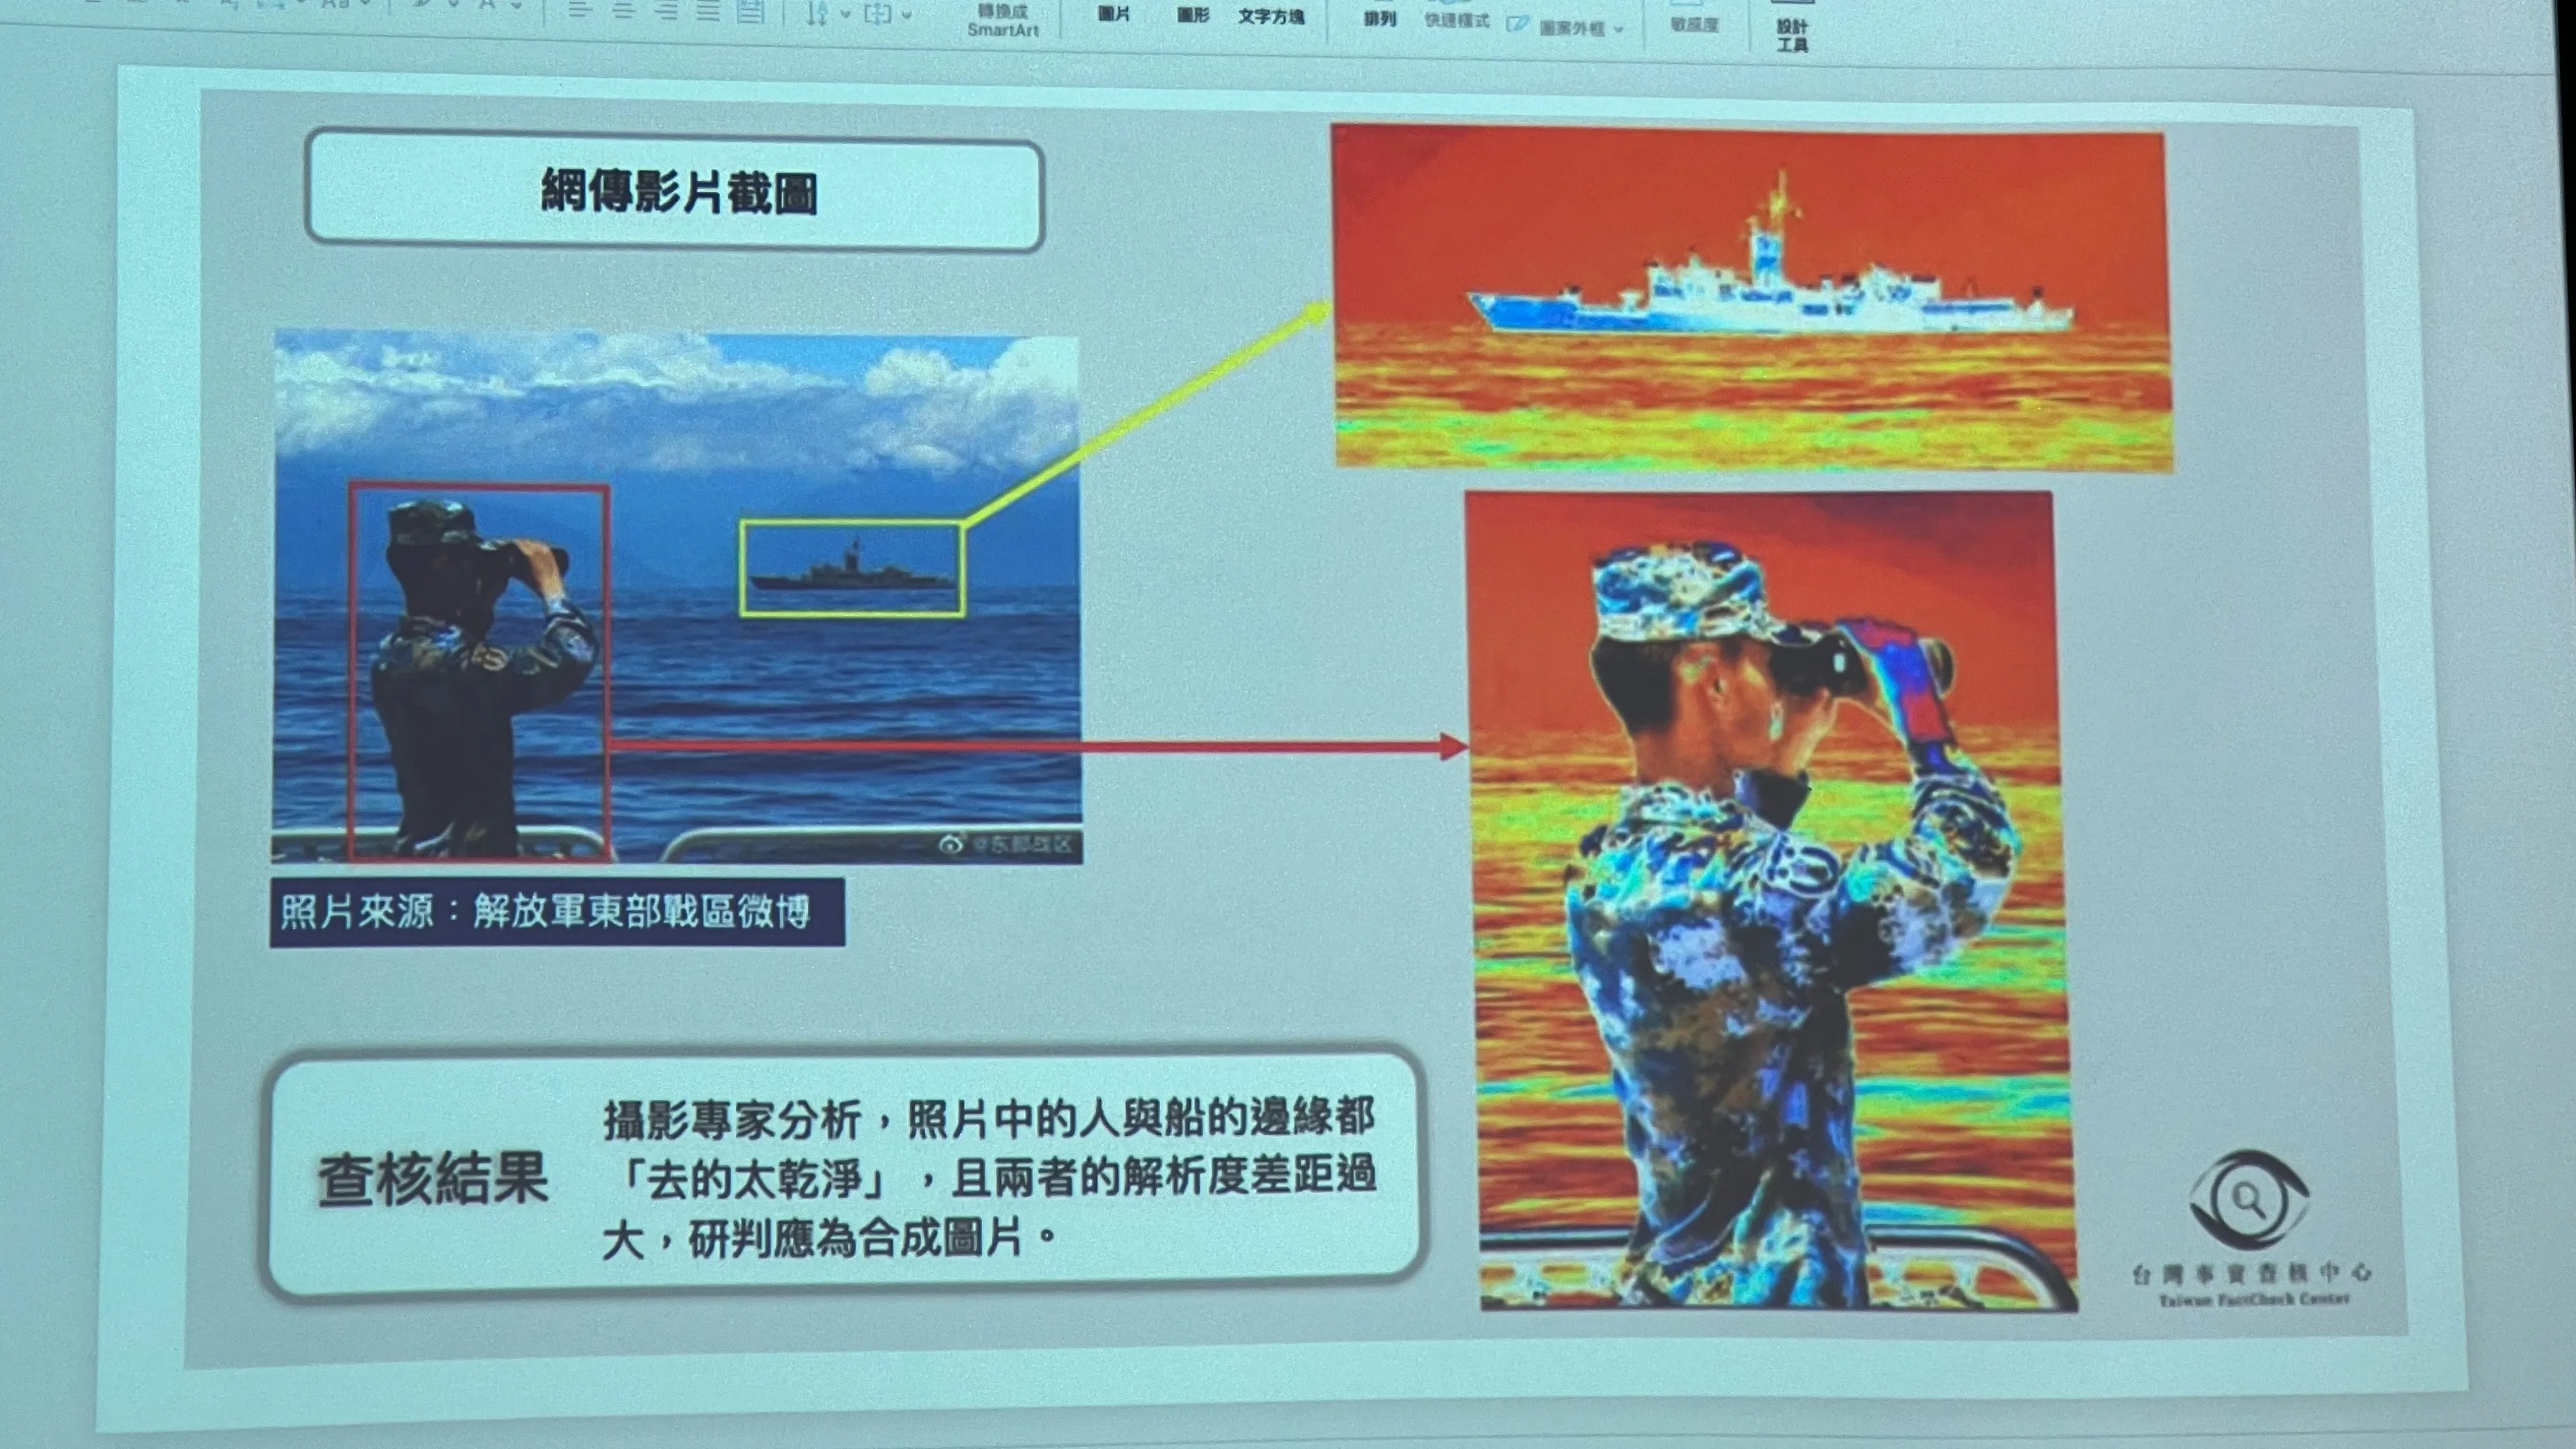 透過分析圖片，可以證明新華社的這張照片是合成的，因為前景和背景的解析度不同。